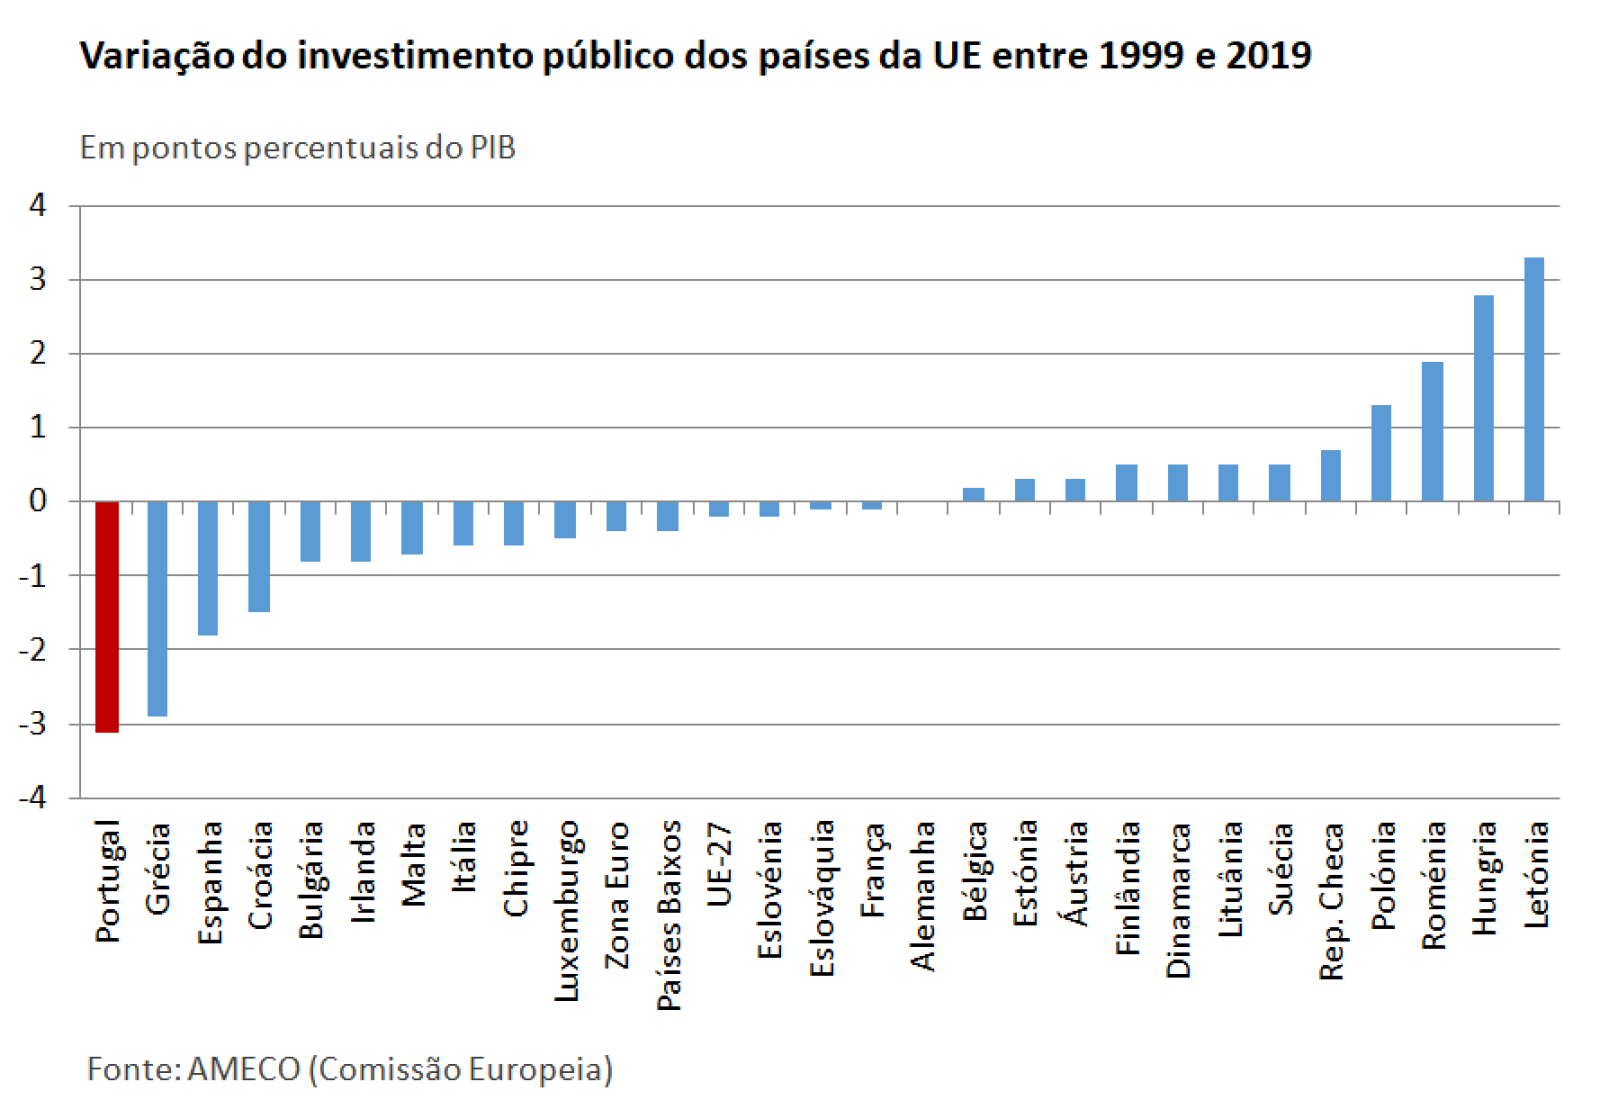 grafico variacao do investimento publico dos paises da ue 1999-2019